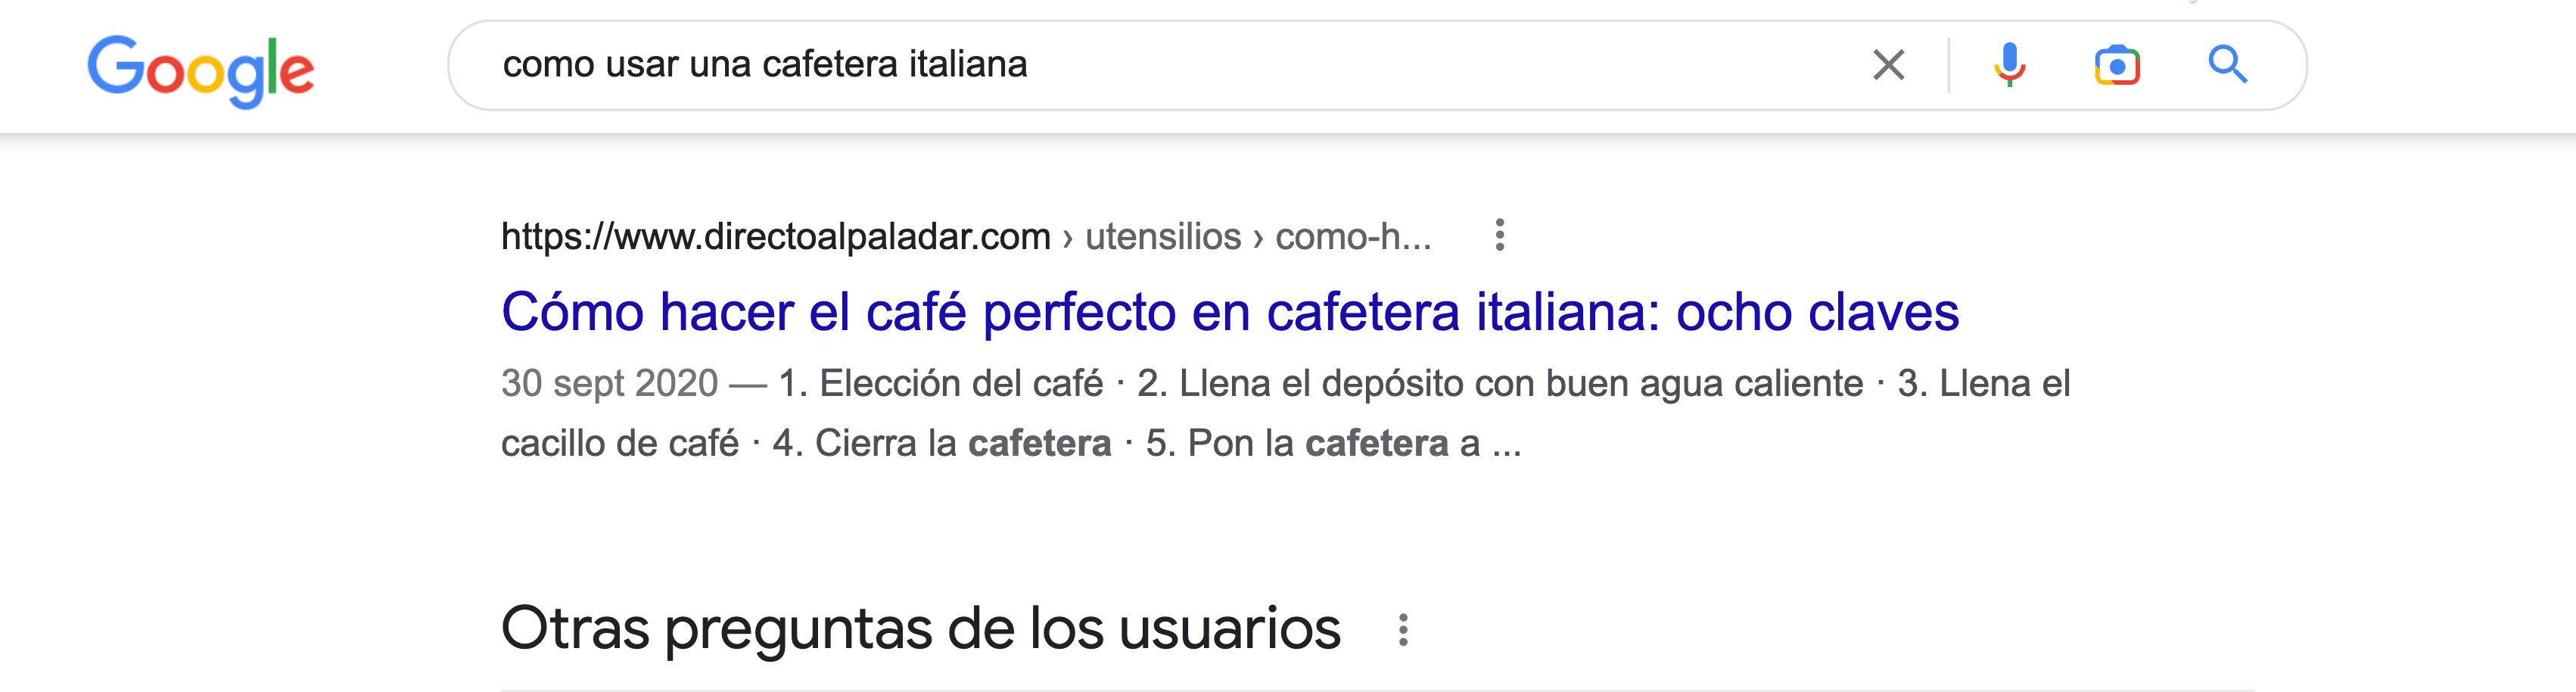  Resultado de la búsqueda "cómo usar una cafetera italiana" en Google